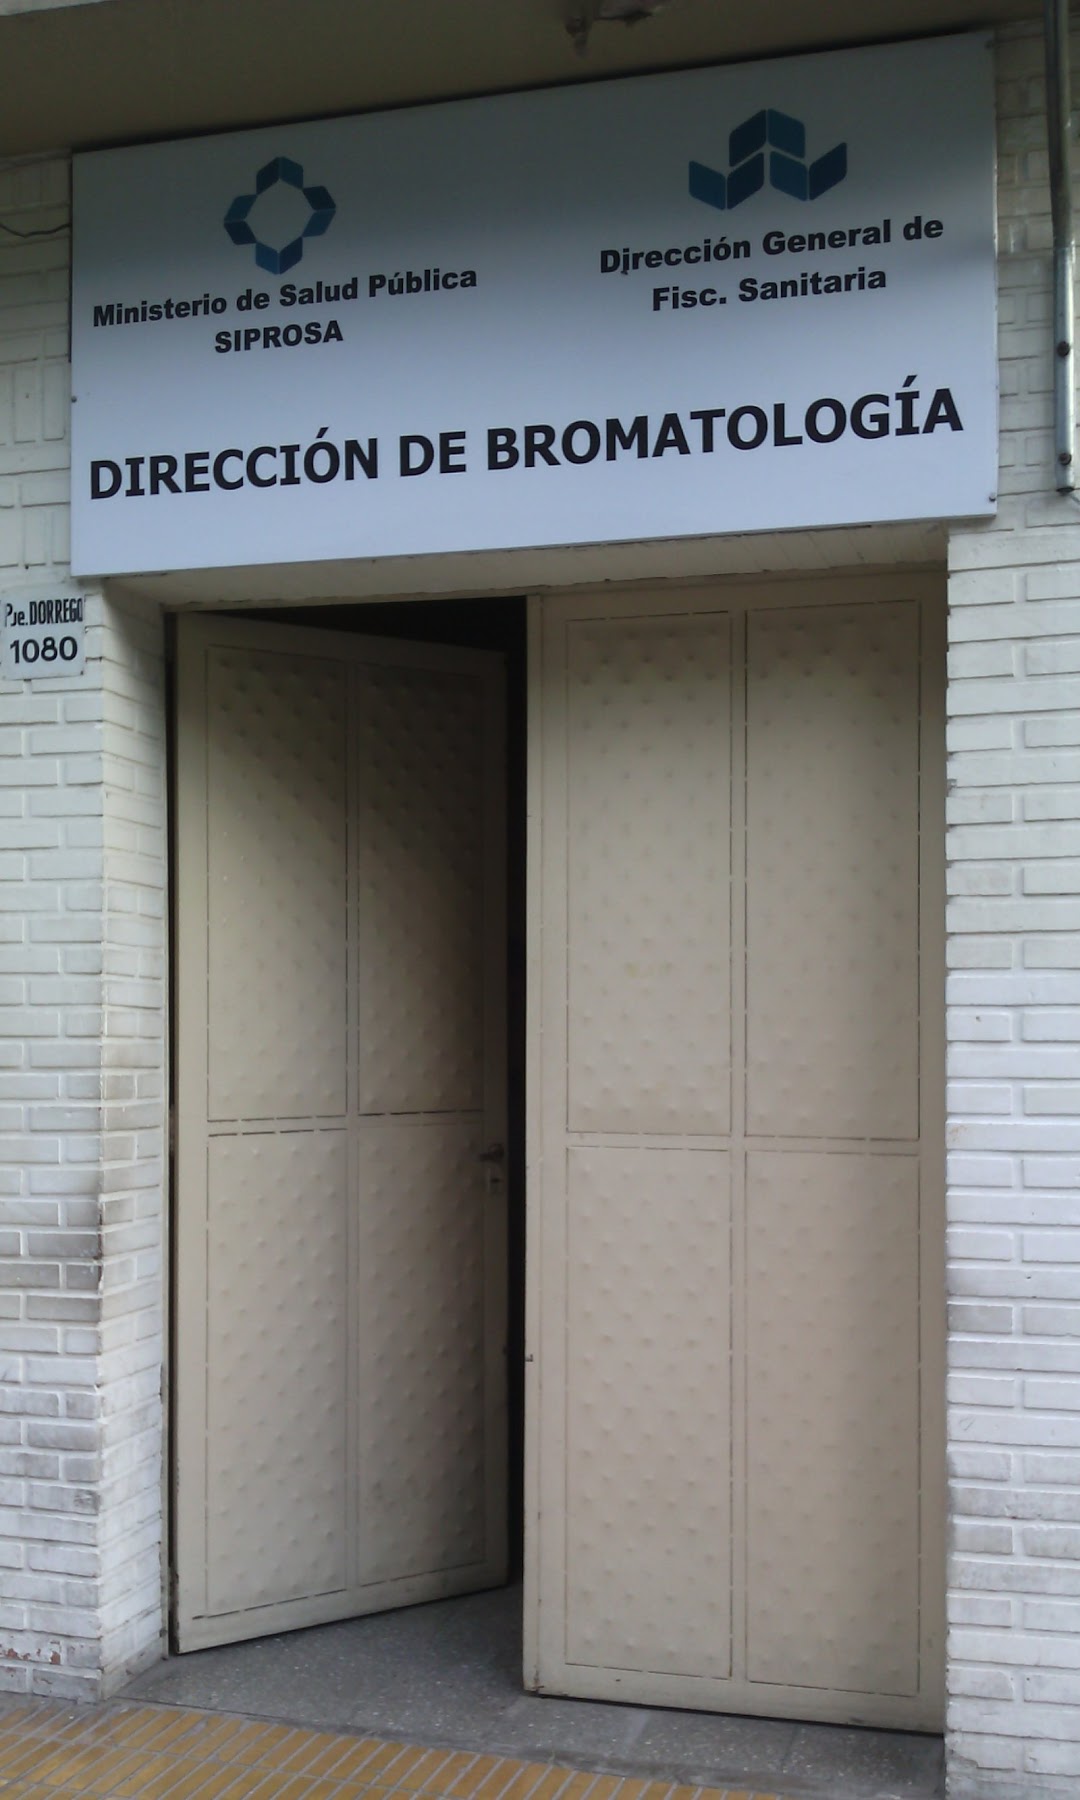 Ministerio de Salud Pública SIPROSA Dirección de Bromatología